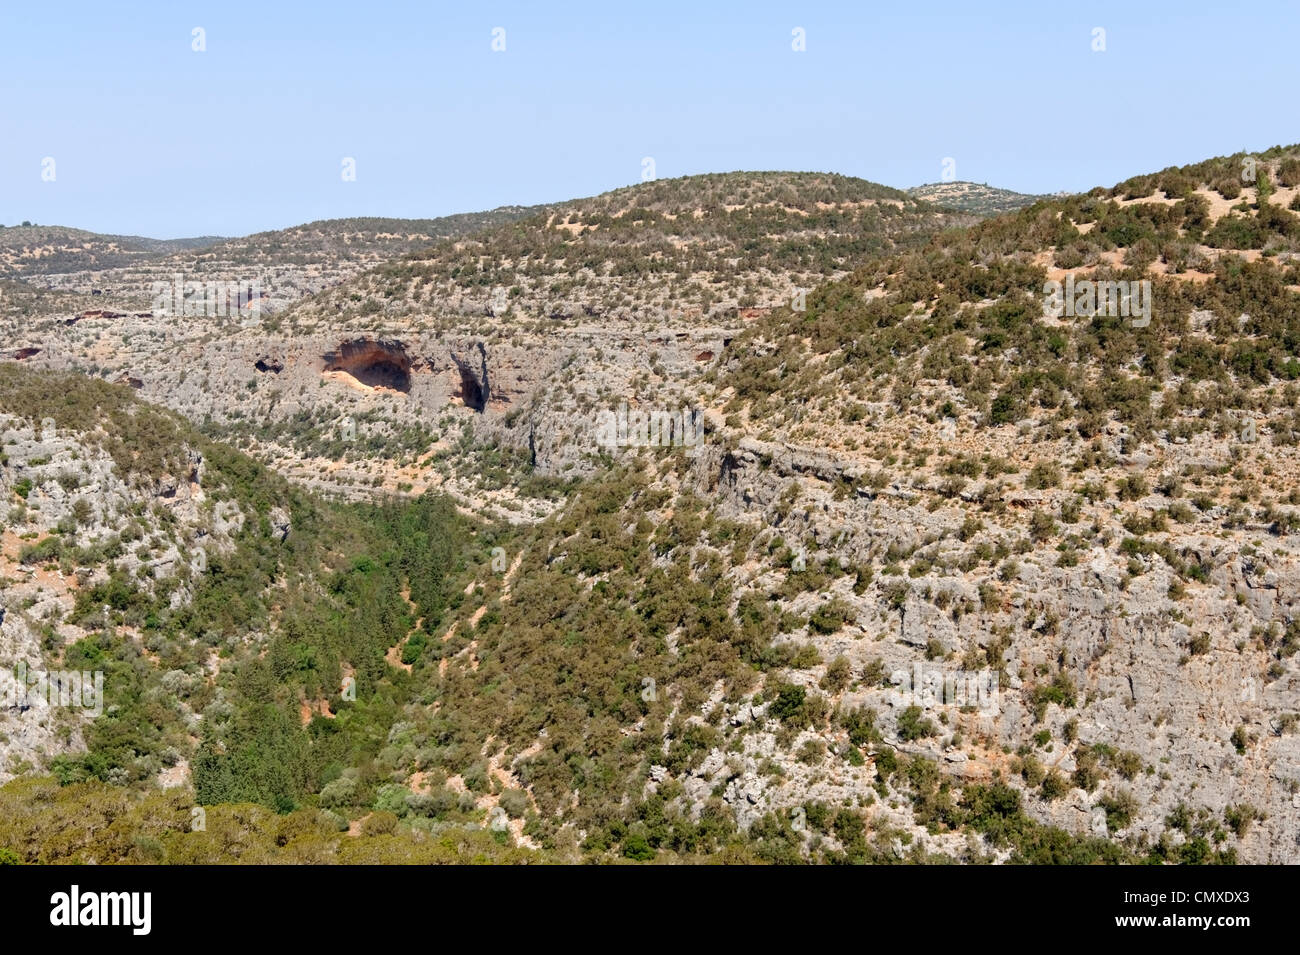 Al Wadi Kuf. La Cyrénaïque. La Libye. Vue sur le paysage spectaculaire du Wadi al-Kuf dans les montagnes Akhdar ou vert des montagnes. Banque D'Images